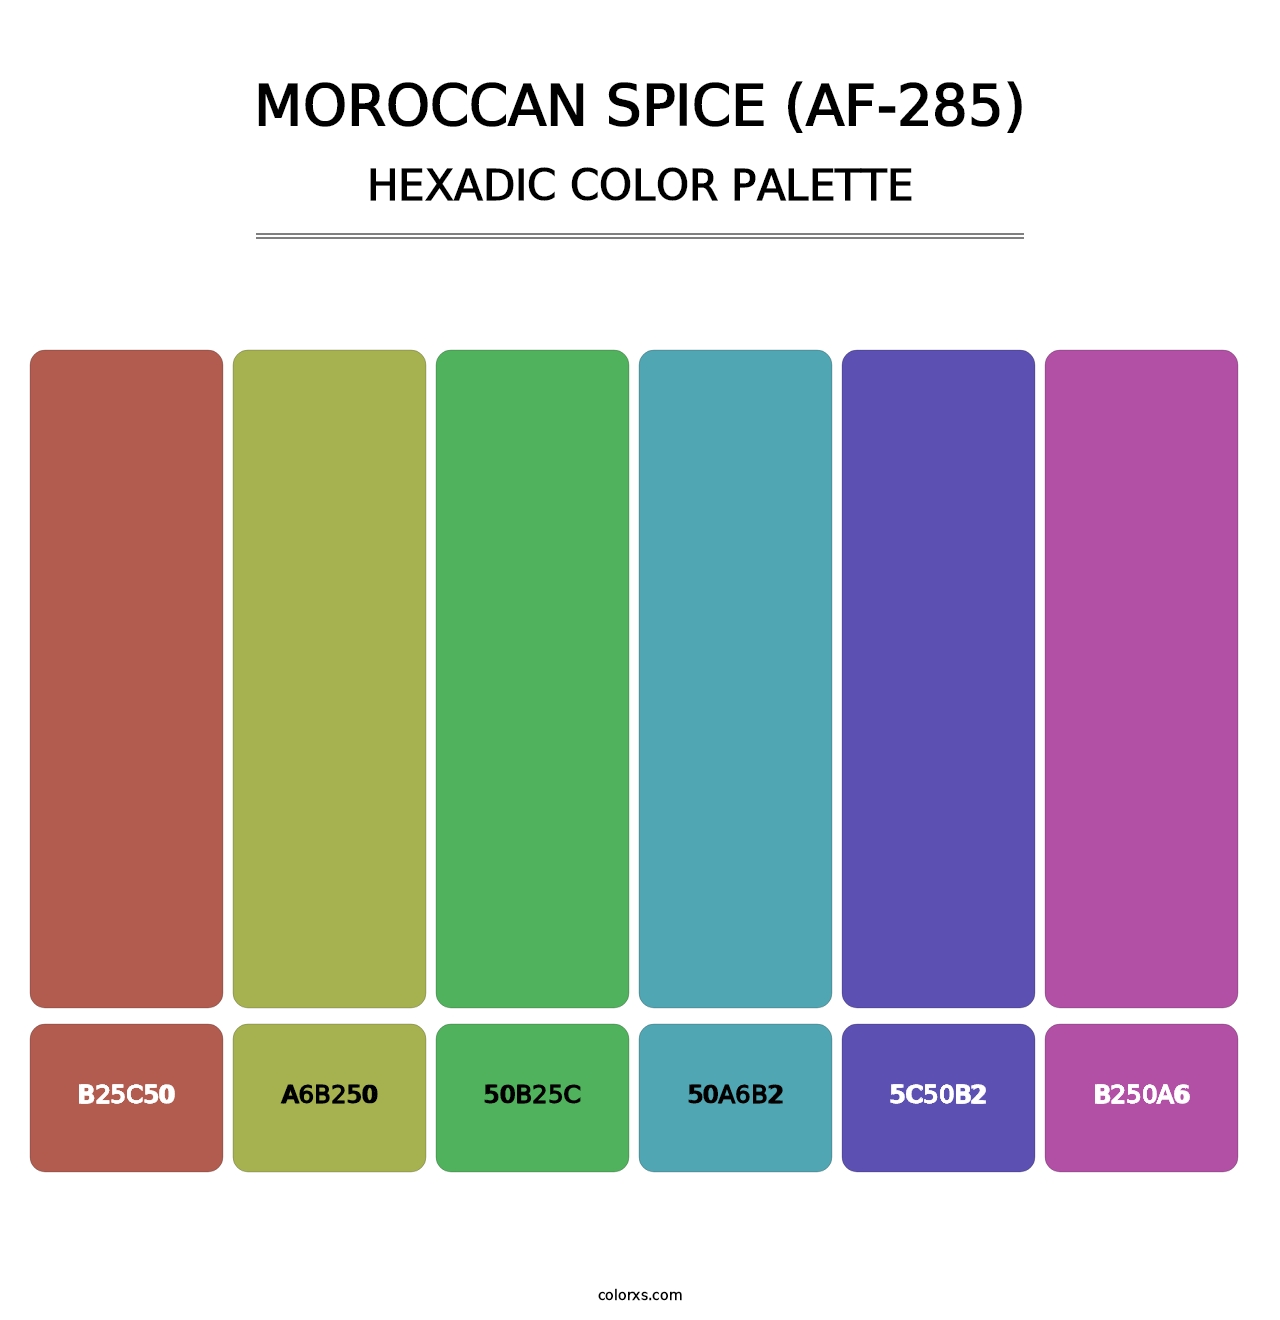 Moroccan Spice (AF-285) - Hexadic Color Palette